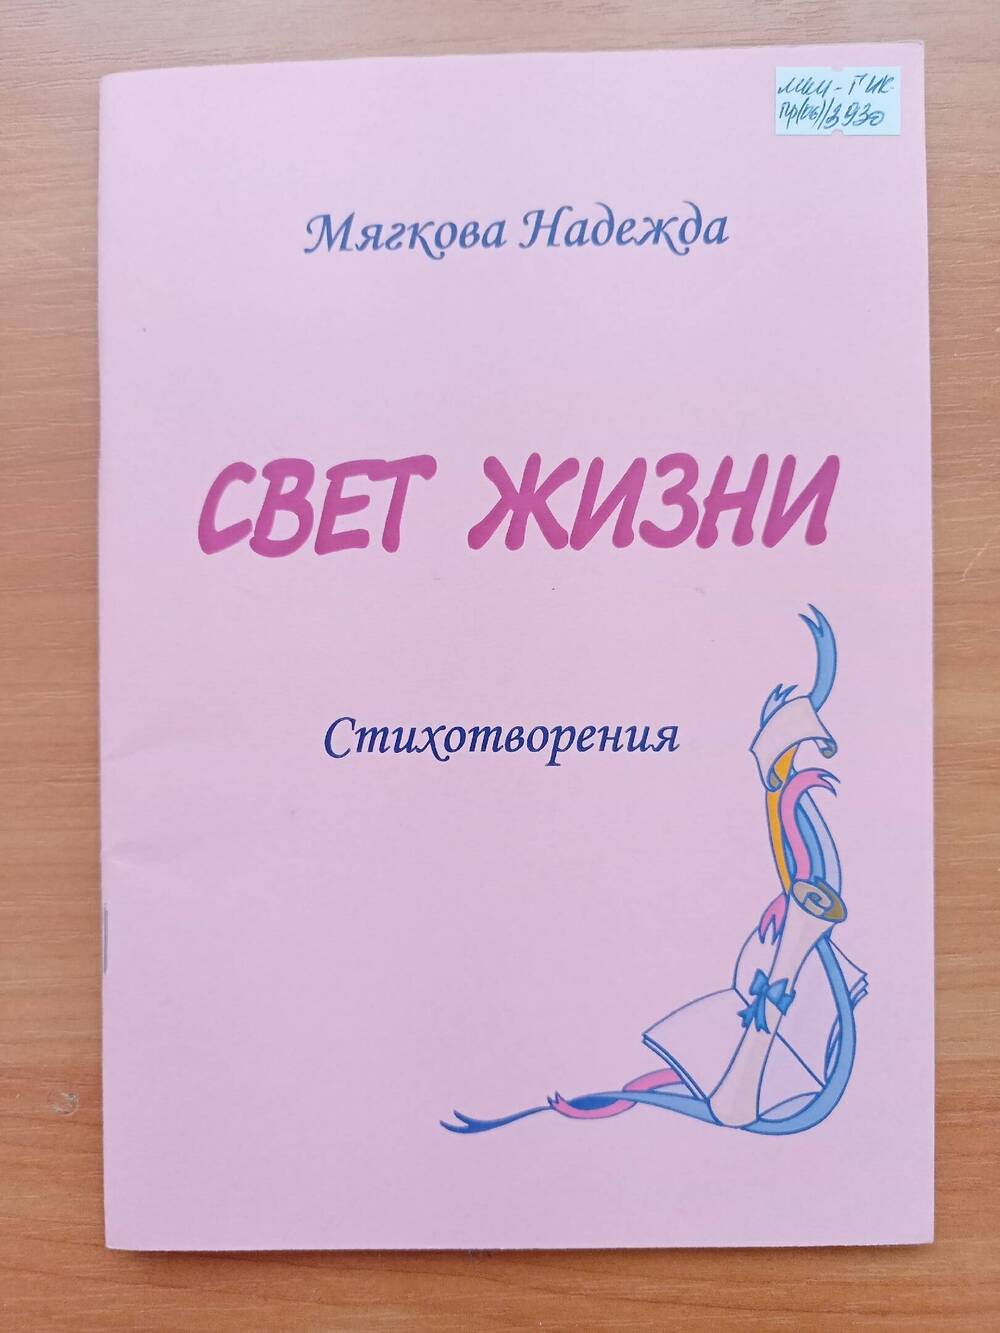 Книга Мягкова Н. «Свет жизни. Стихотворения». 2009 г.56 с.